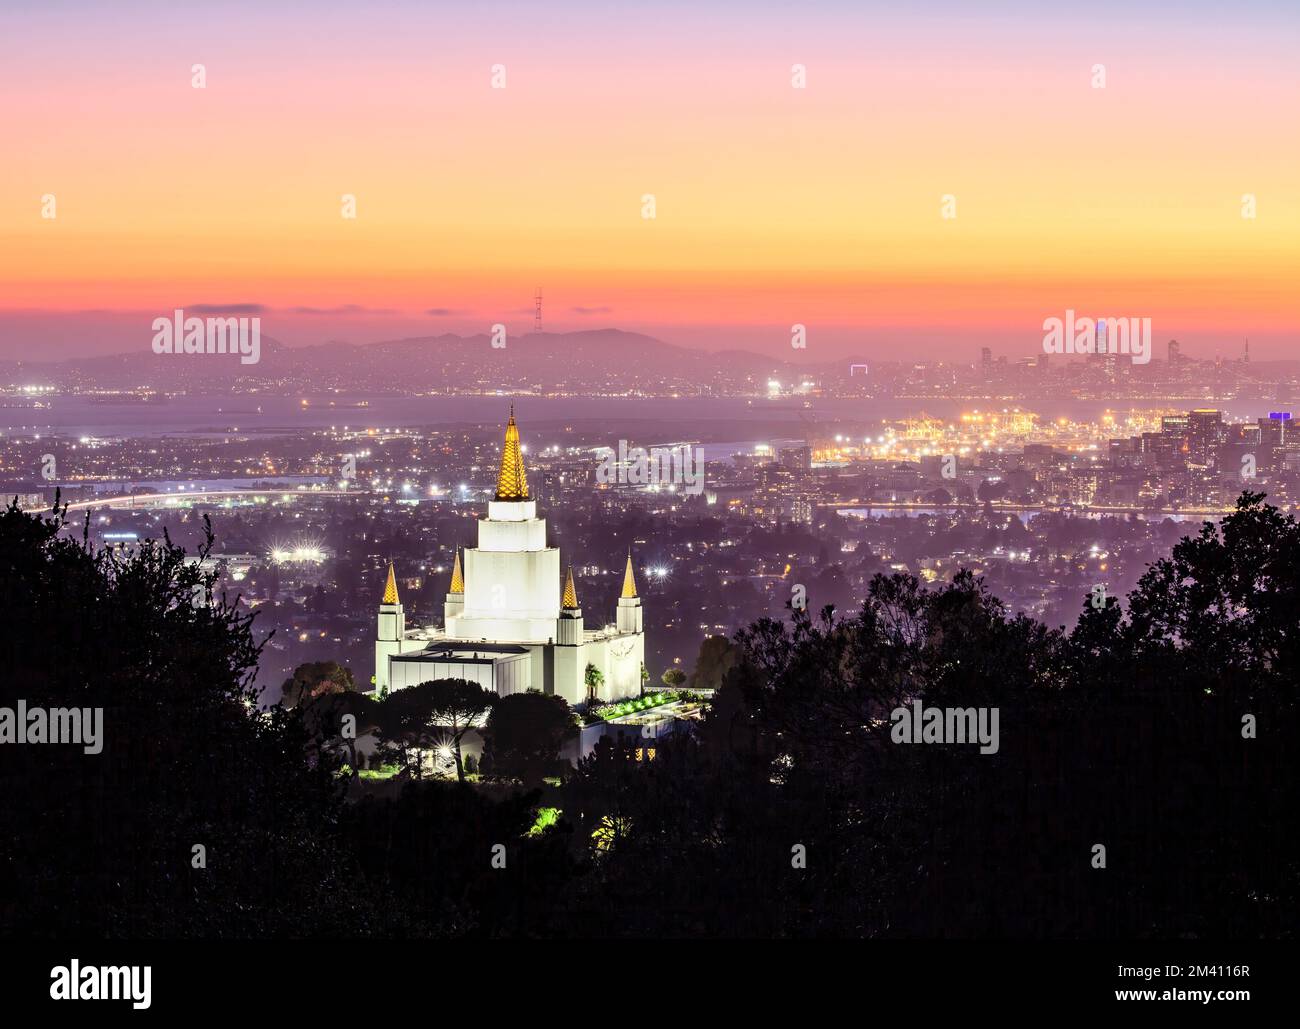 Der Oakland California Temple in den Hügeln von Oakland und die Skyline der Stadt unter farbenfrohem Himmel in der Abenddämmerung, Kalifornien Stockfoto